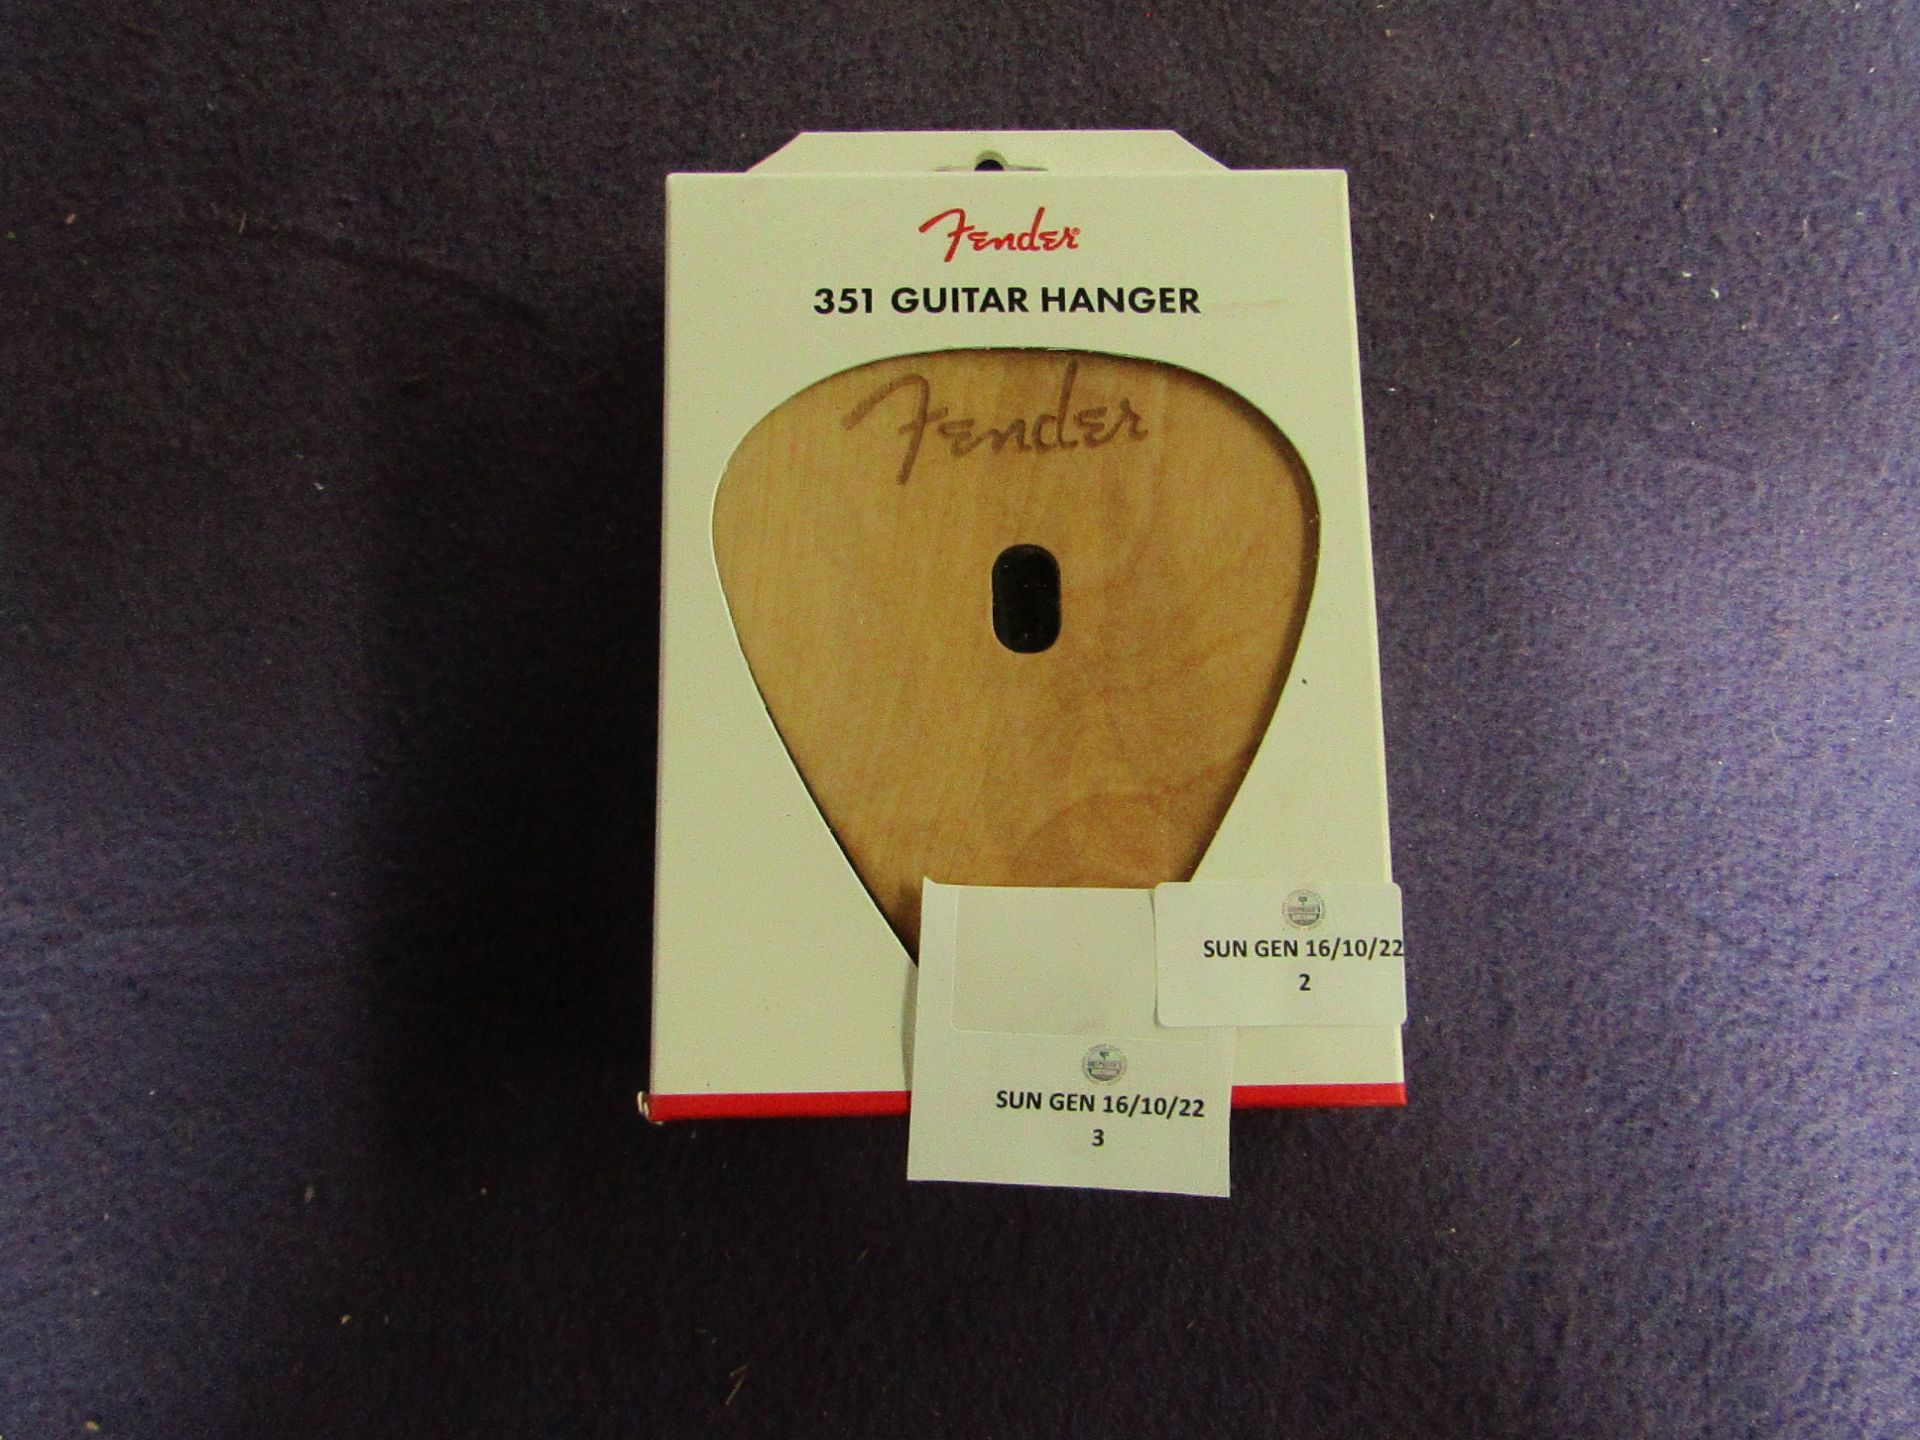 Fenders - 351 Guitar Hanger - New & Boxed.